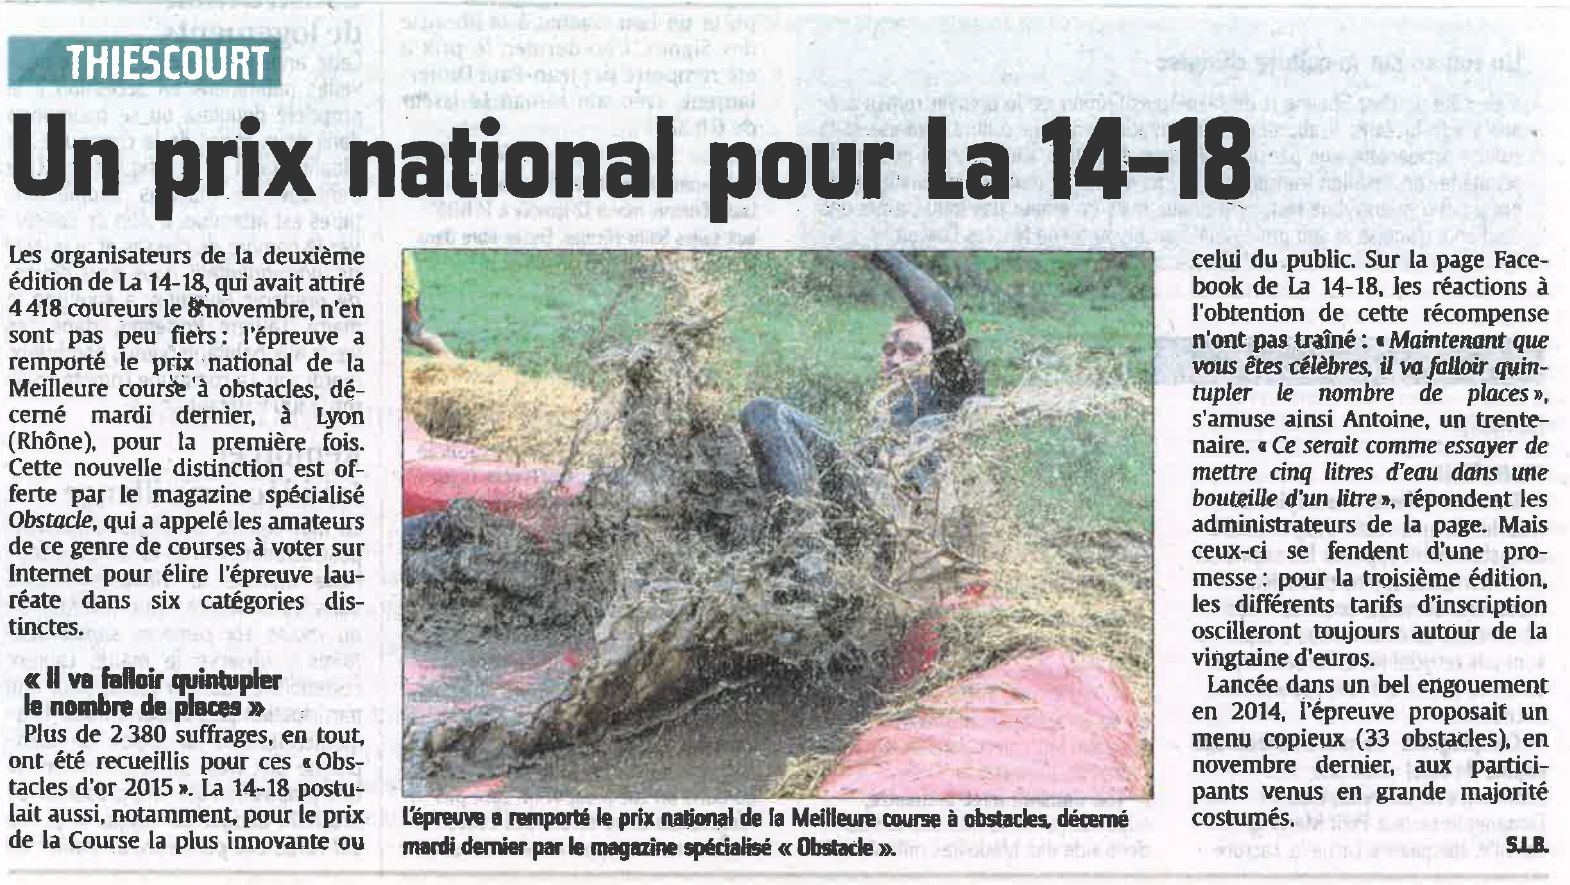 Article du courrier picard La 14-18 de Thiescourt, obstacle d'or meilleure course à obstacles 2015 en France